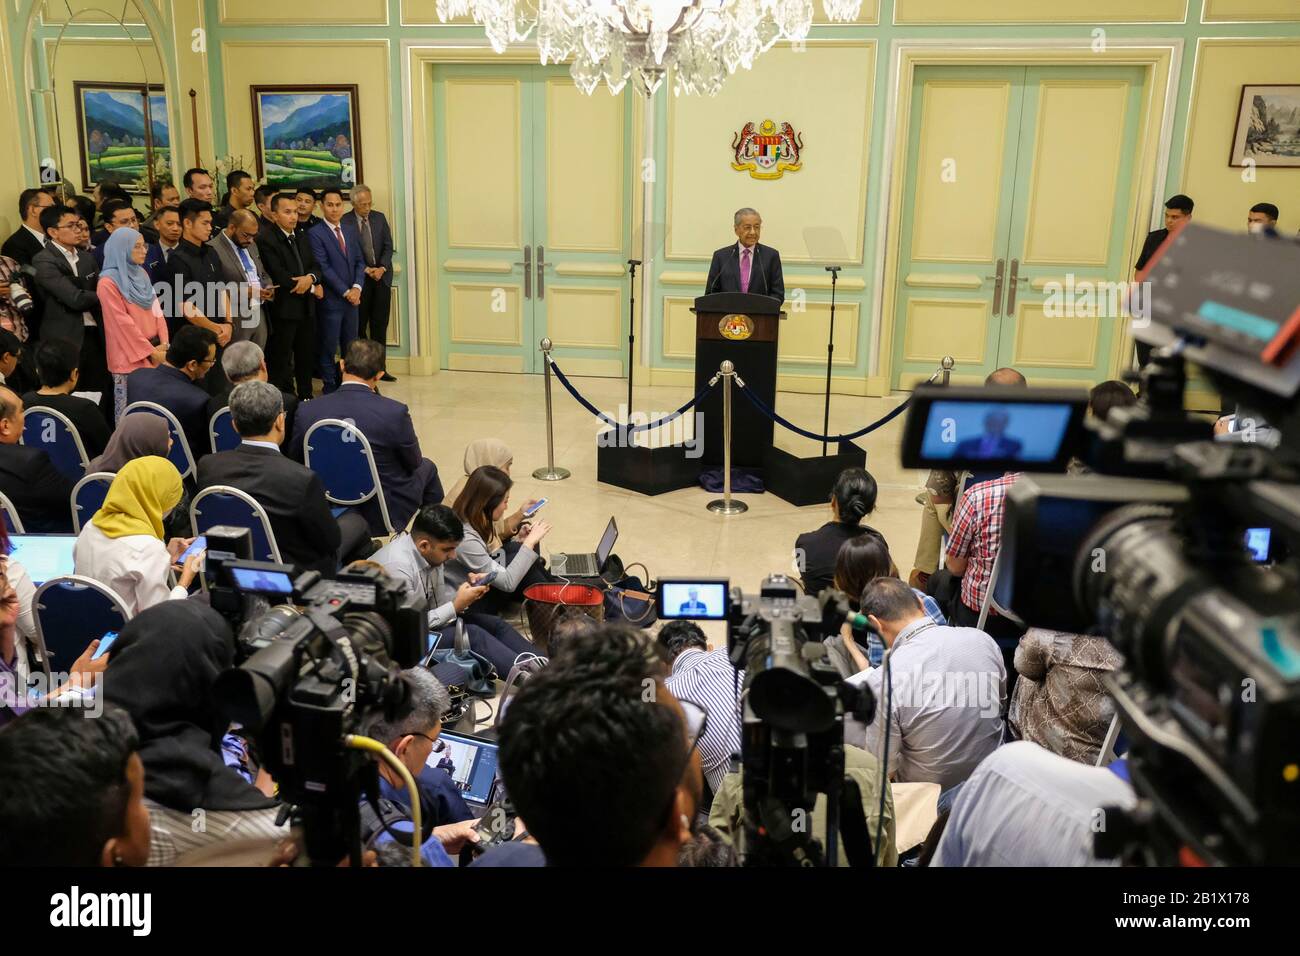 Medien, die als Tun Dr. Mahathir Mohamad angesehen werden, künden das Konjunkturpaket 2020 von Malaysia in Putrajaya.Malaysia hat Einnahmen von mehr als 20 Milliarden als Konjunkturpaket, um Bedenken hinsichtlich der Auswirkungen des Covid-19-Virus-Ausbruchs zu zerstreuen. Das Konjunkturpaket wird sich auf Tourismus, Investitionen und Konsum konzentrieren, um die Inlandreise anzukurbeln. Stockfoto